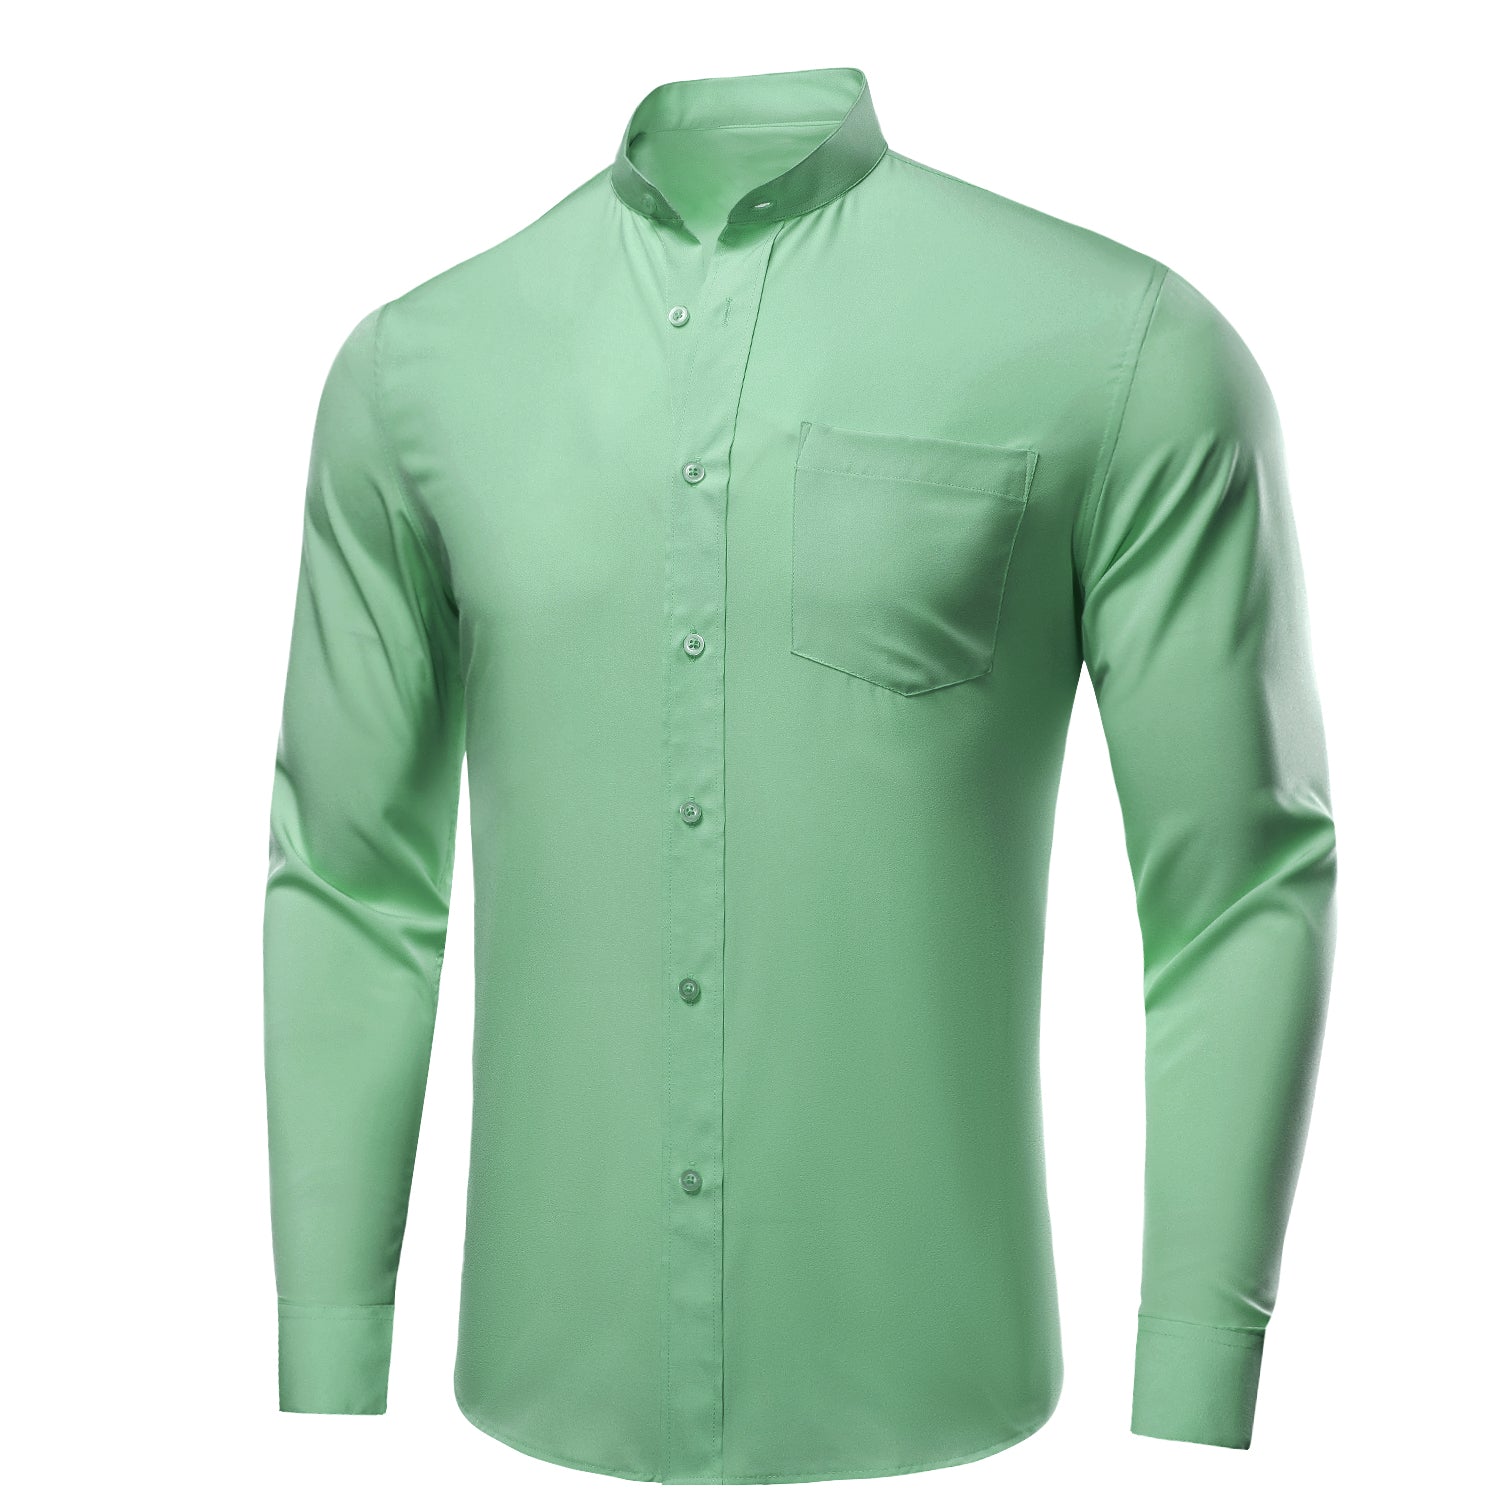 Mint Green Solid Men's Long Sleeve Dress Shirt